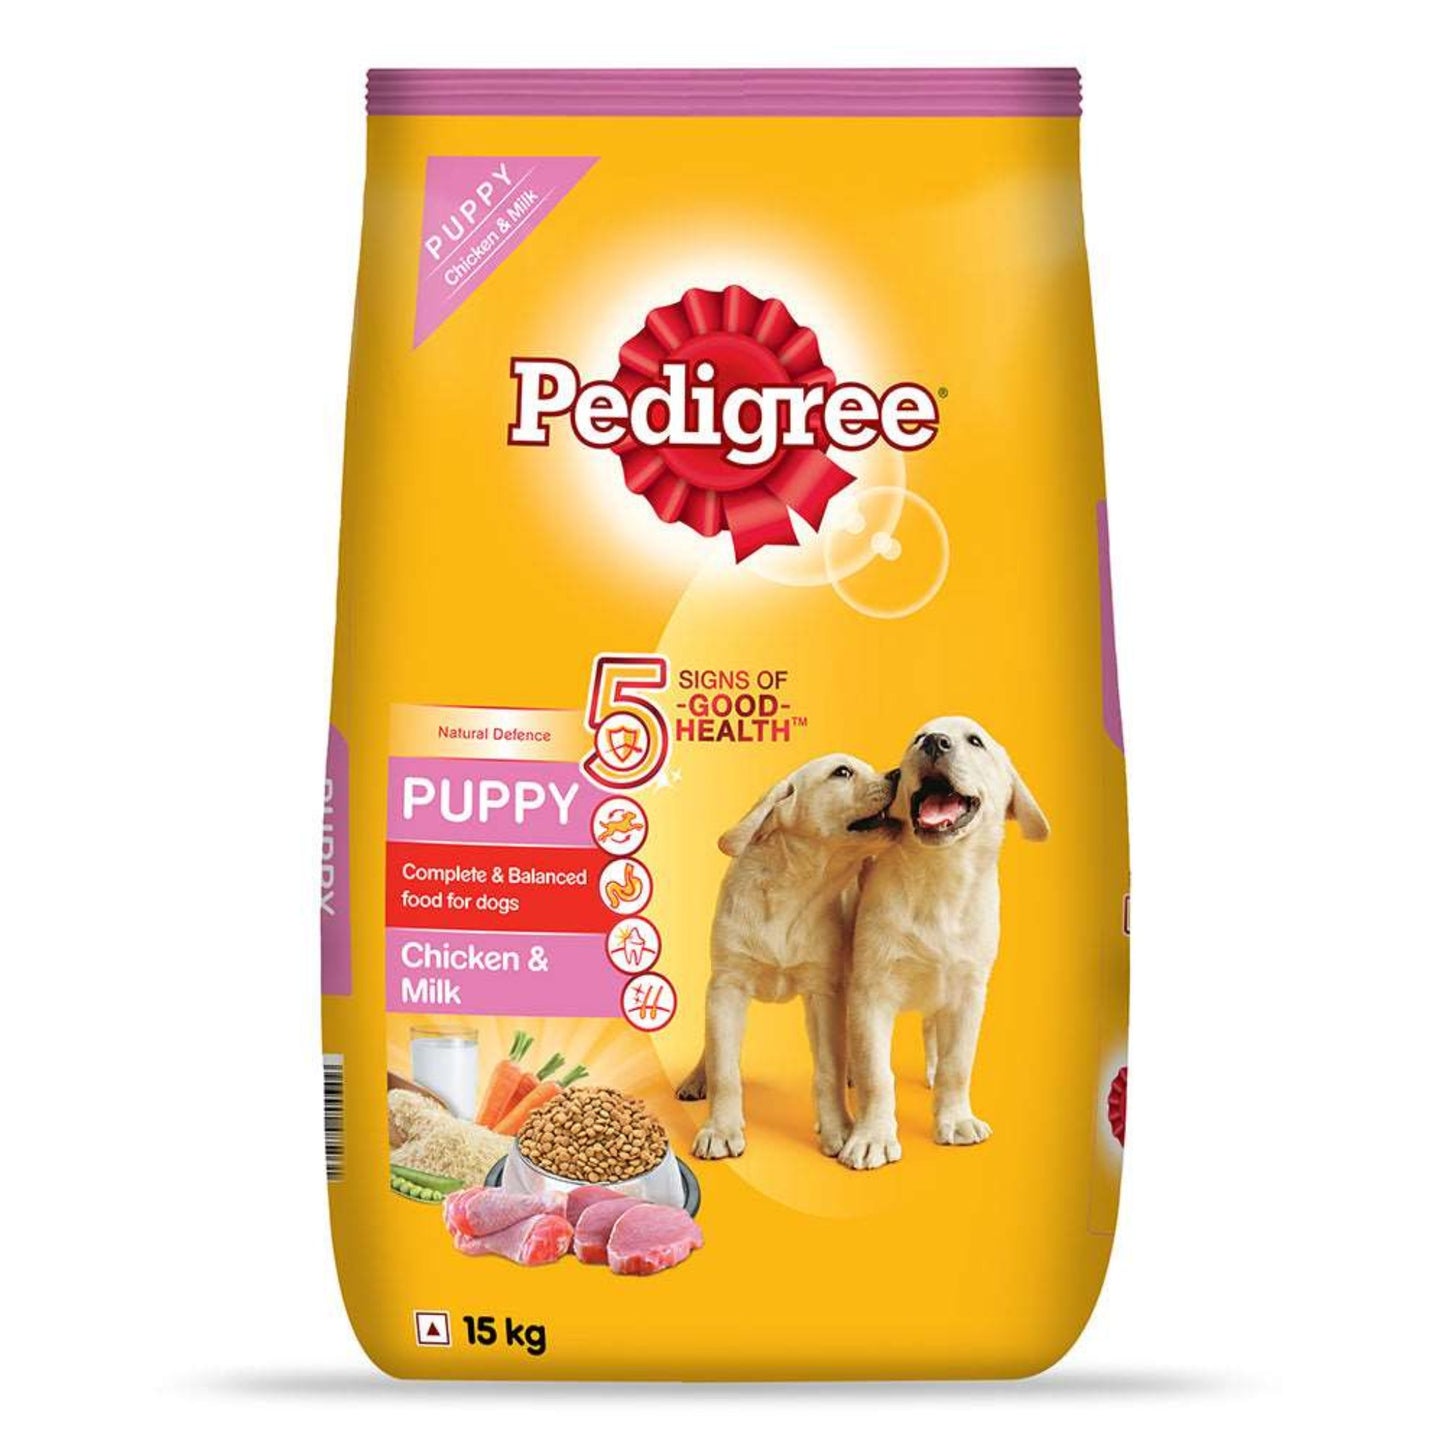 Pedigree Puppy Dry Dog Food - Chicken & Milk, 15Kg